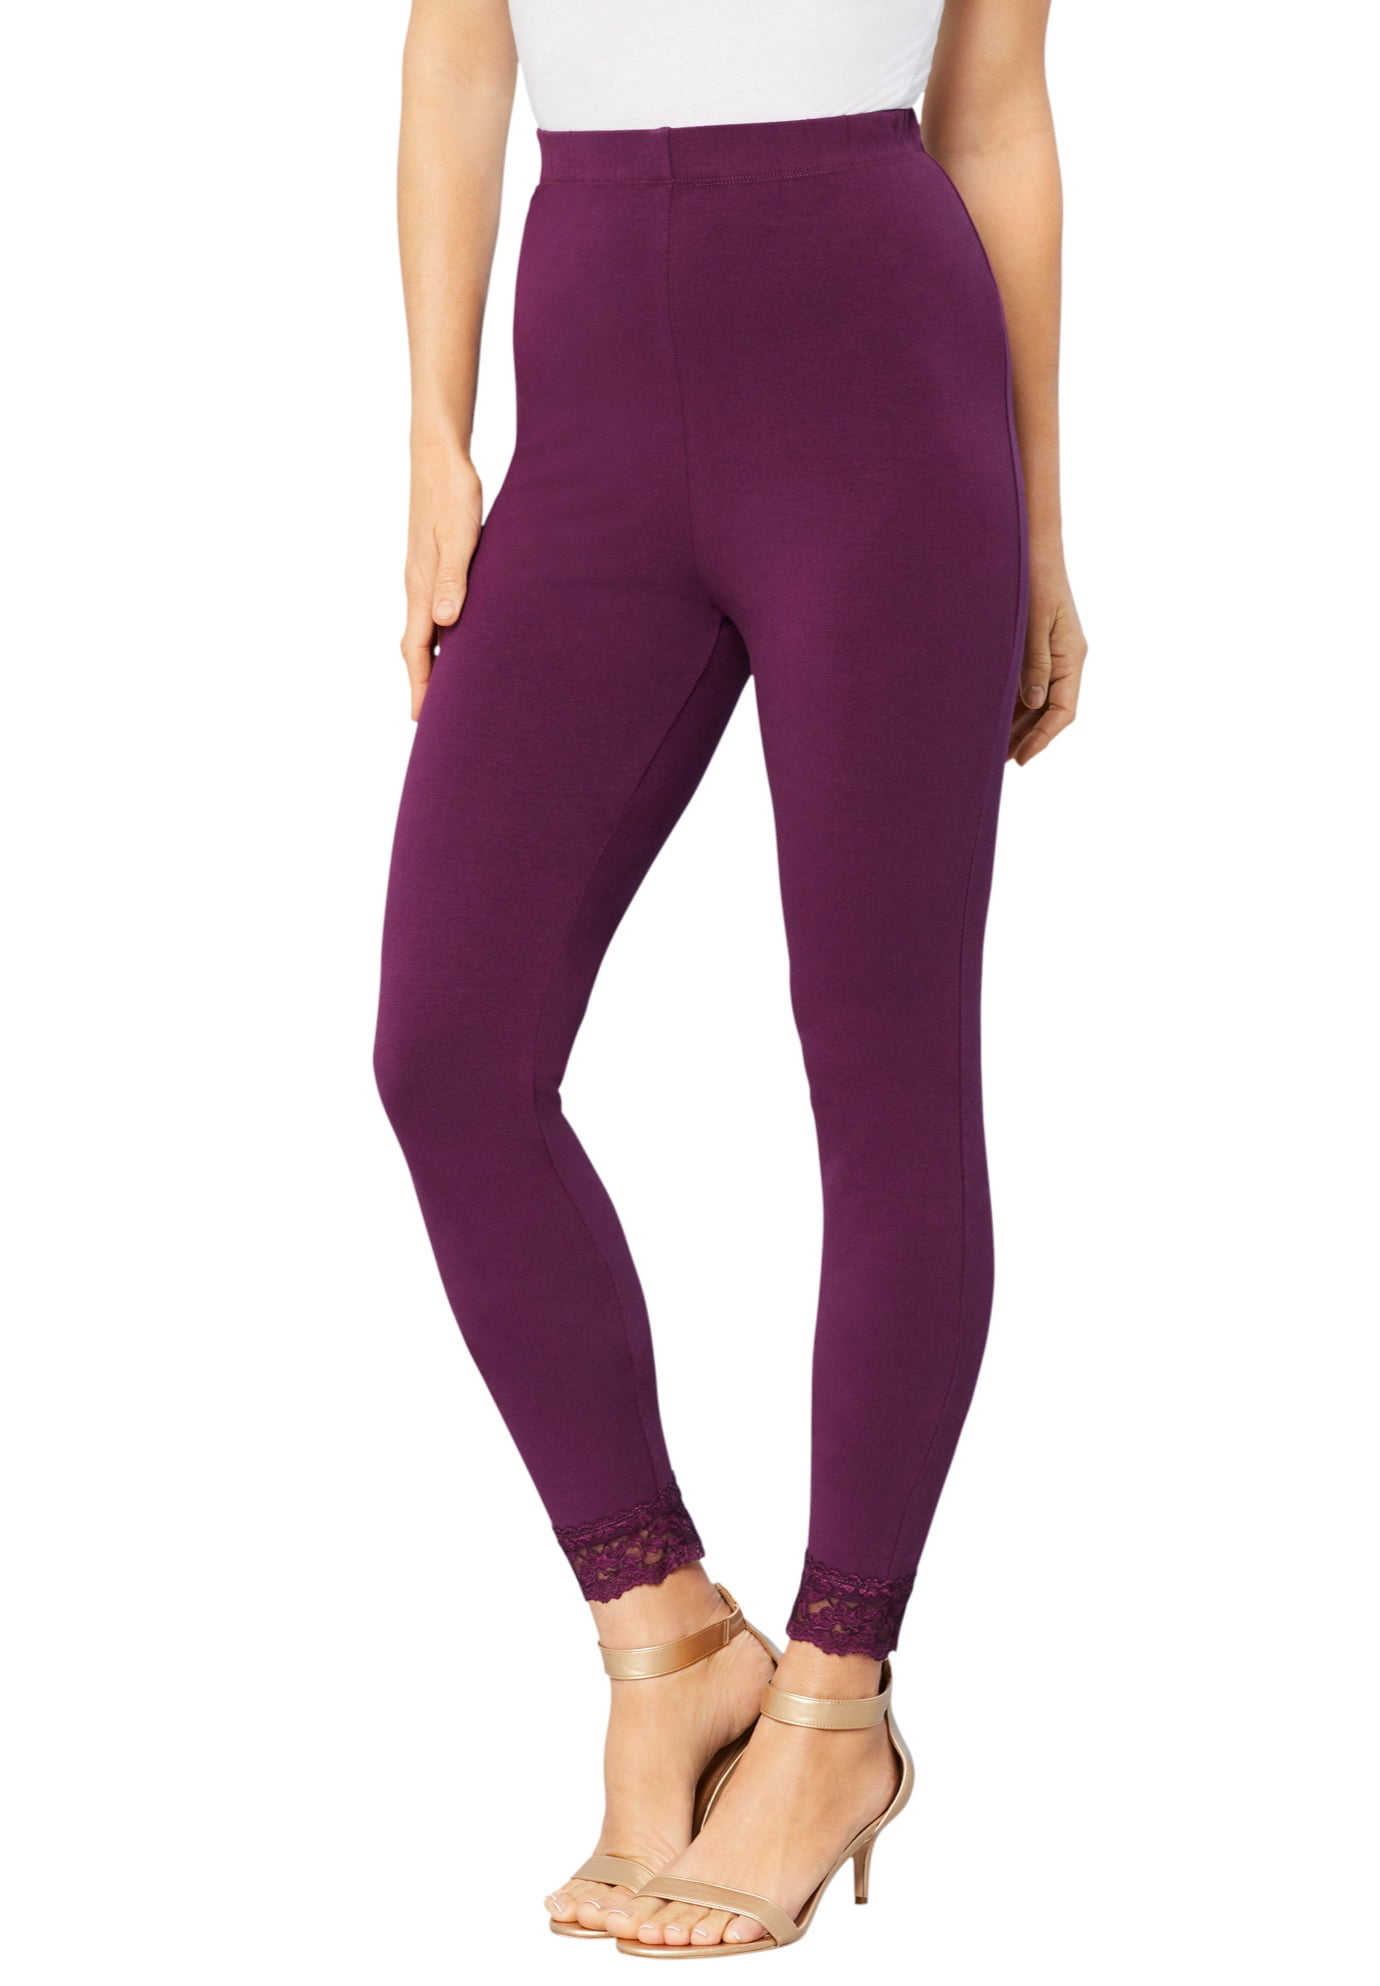 Roamans Women's Plus Size Lace-Trim Essential Stretch Capri Legging Activewear Workout Yoga Pants 